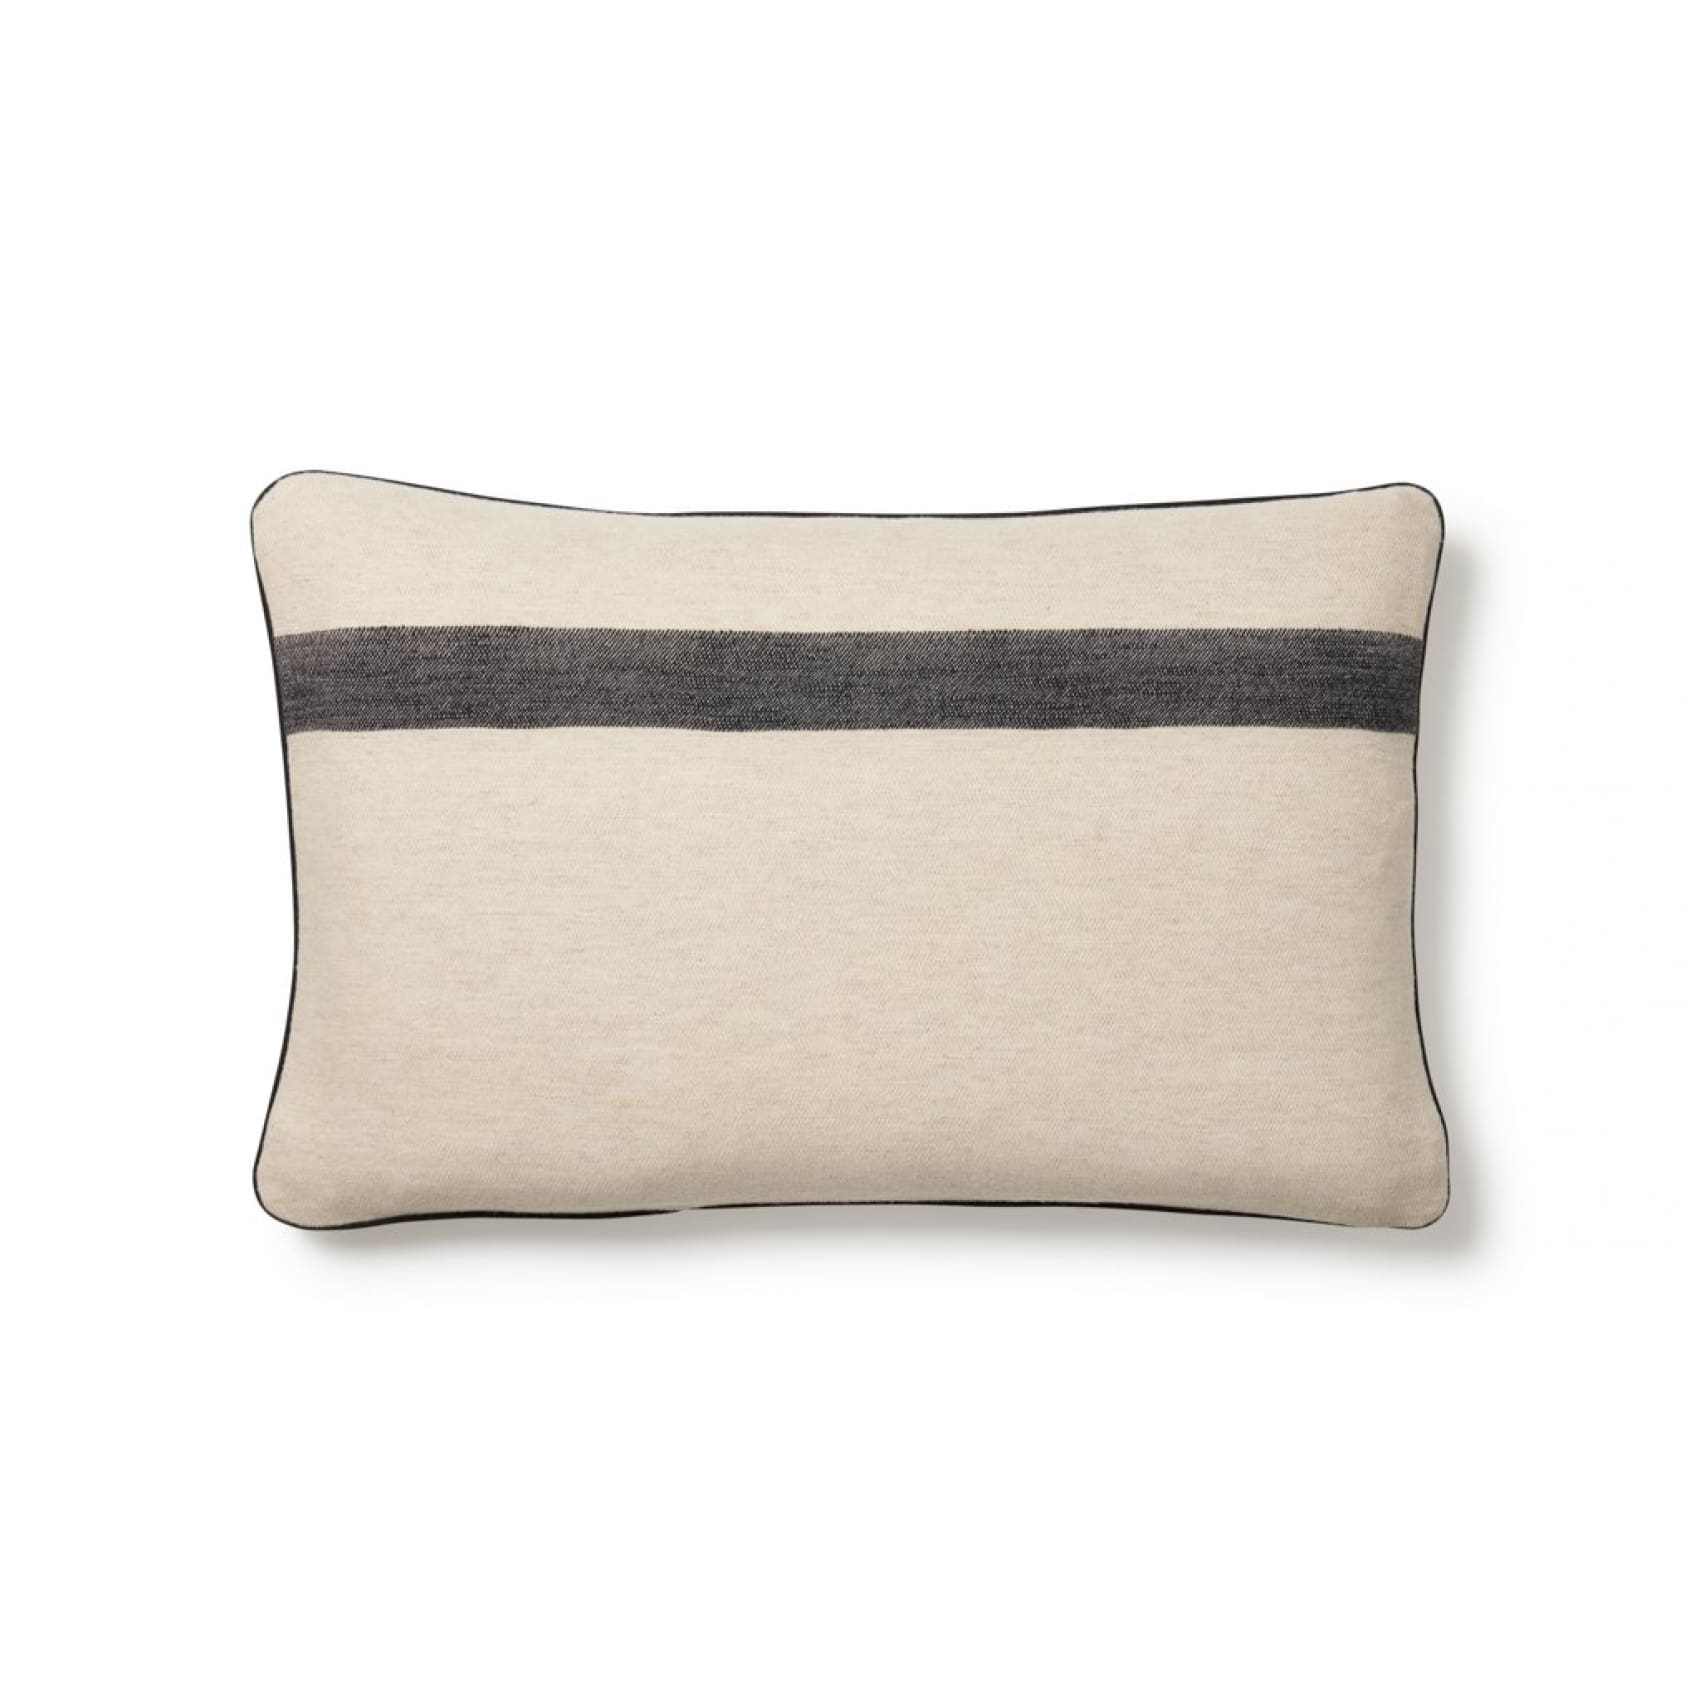 narin-linen-cotton-tencel-cushion-black-ecru-luks-comfort-sleeve-pillow-756.jpg